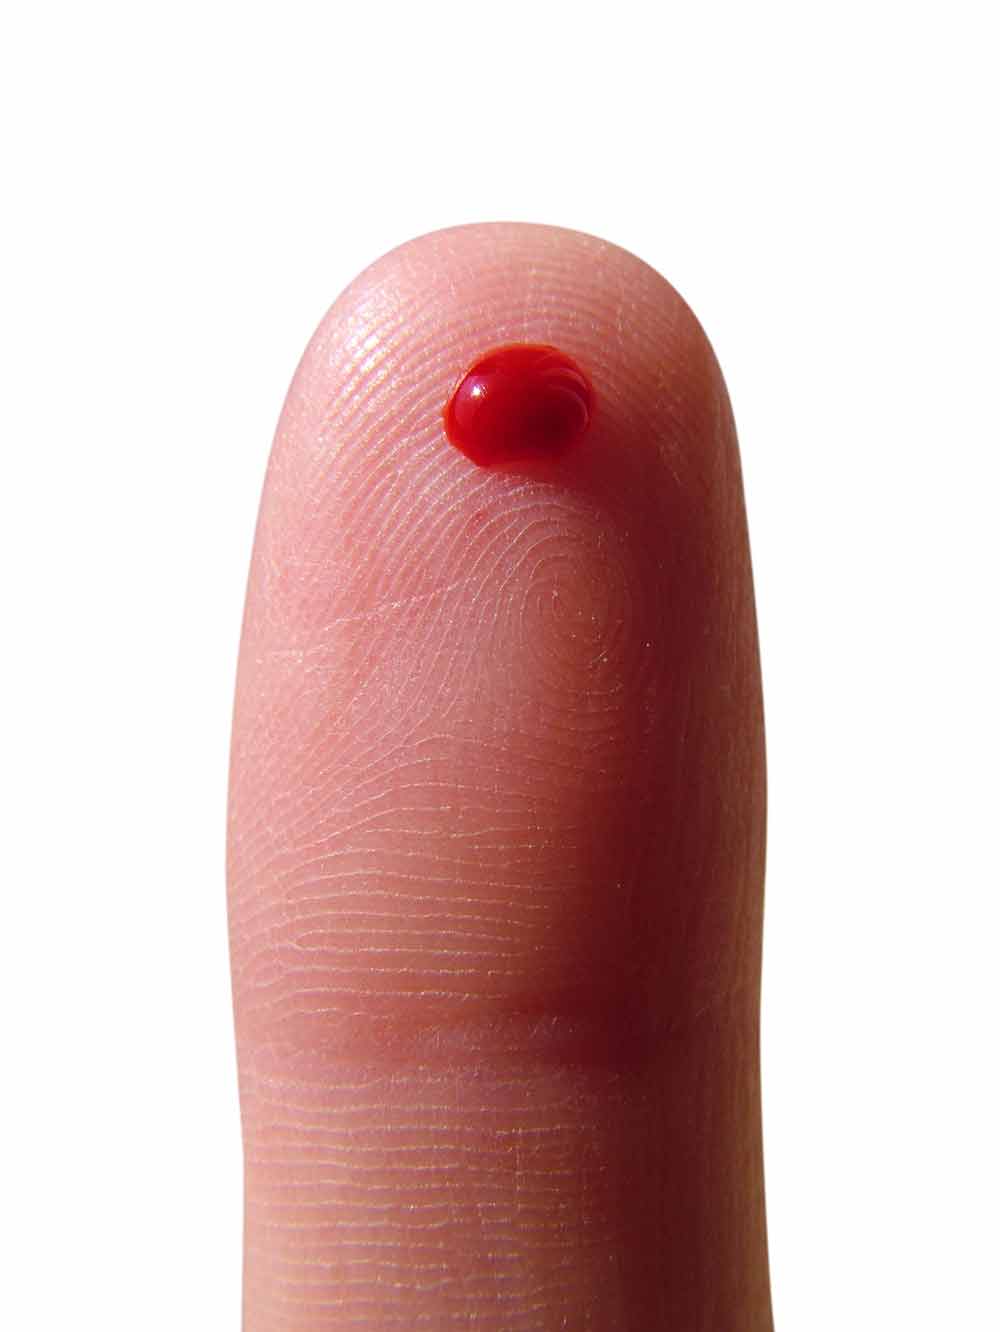 Finger Blut Schnelltest HIV